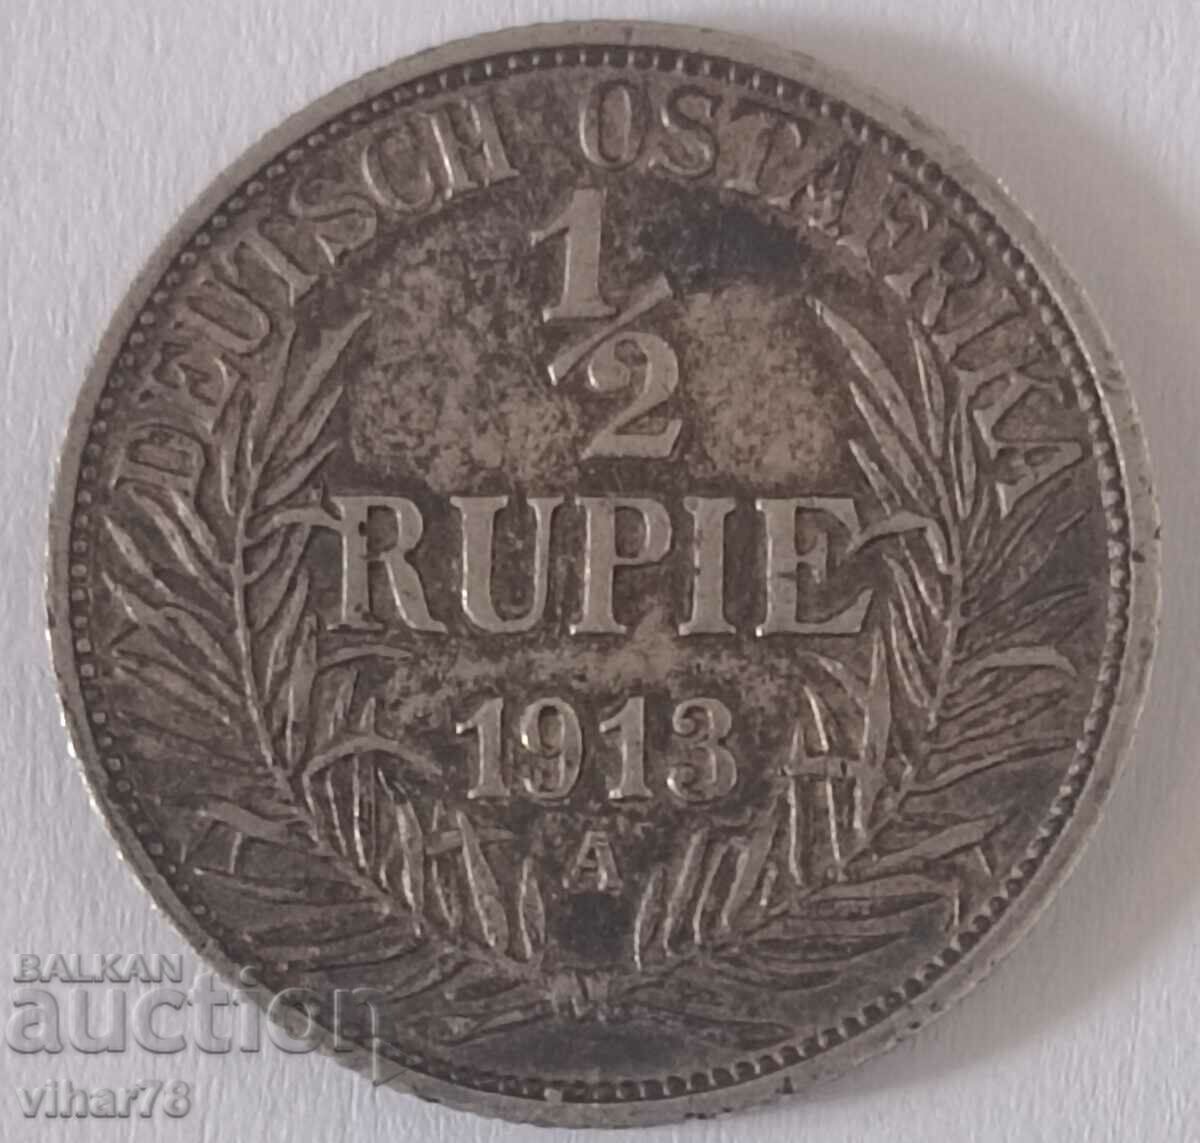 Rare 1/2 Rupee Silver Coin